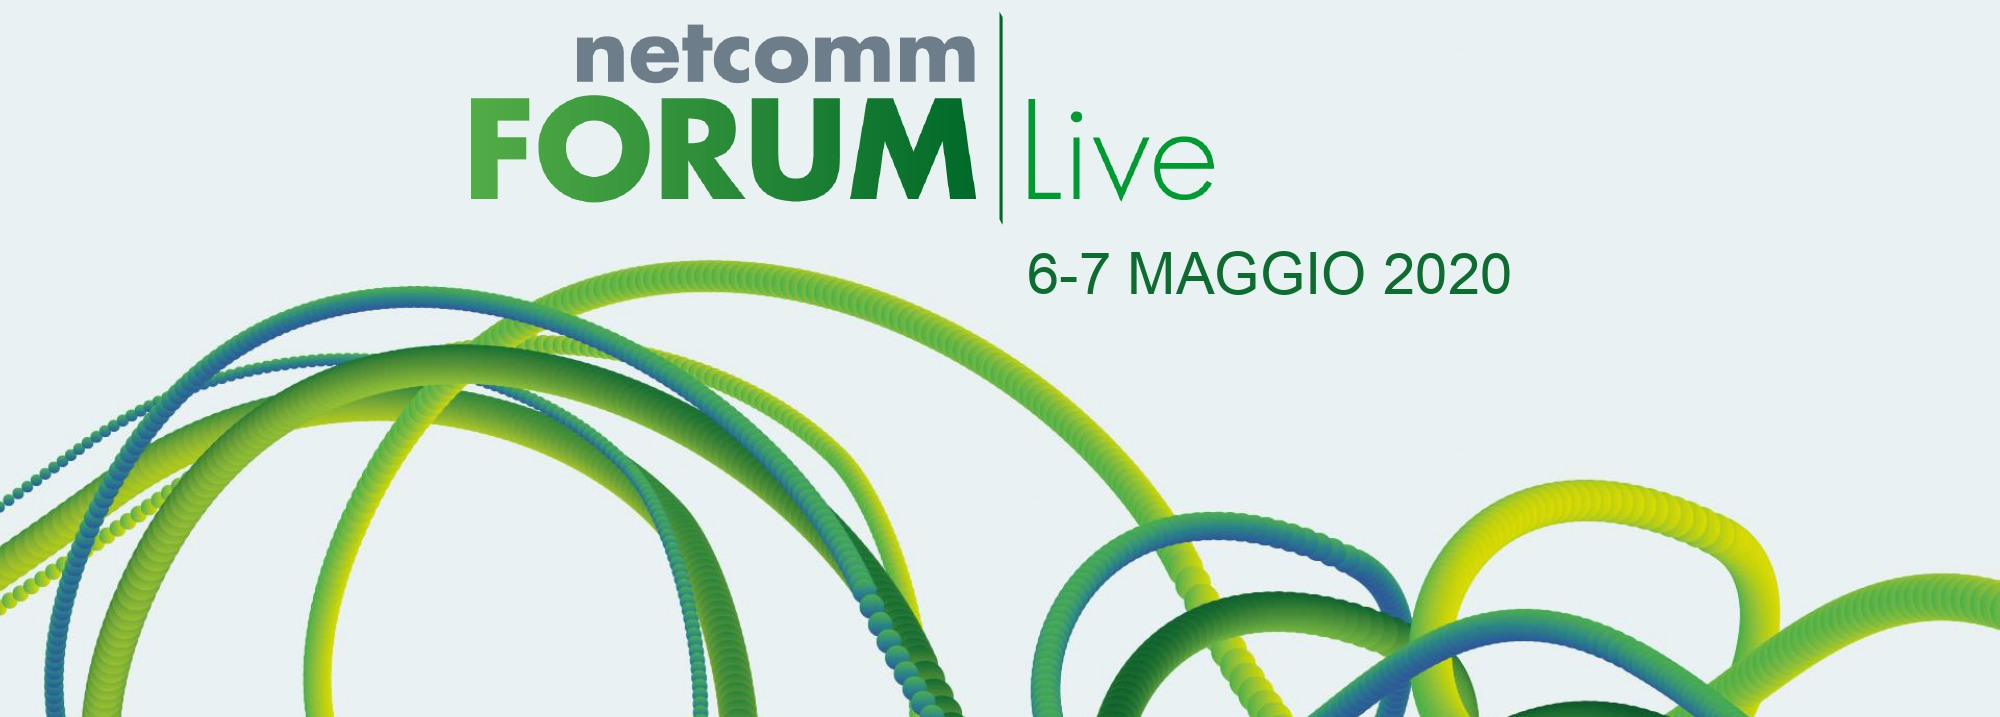 Netcomm FORUM Live 2020